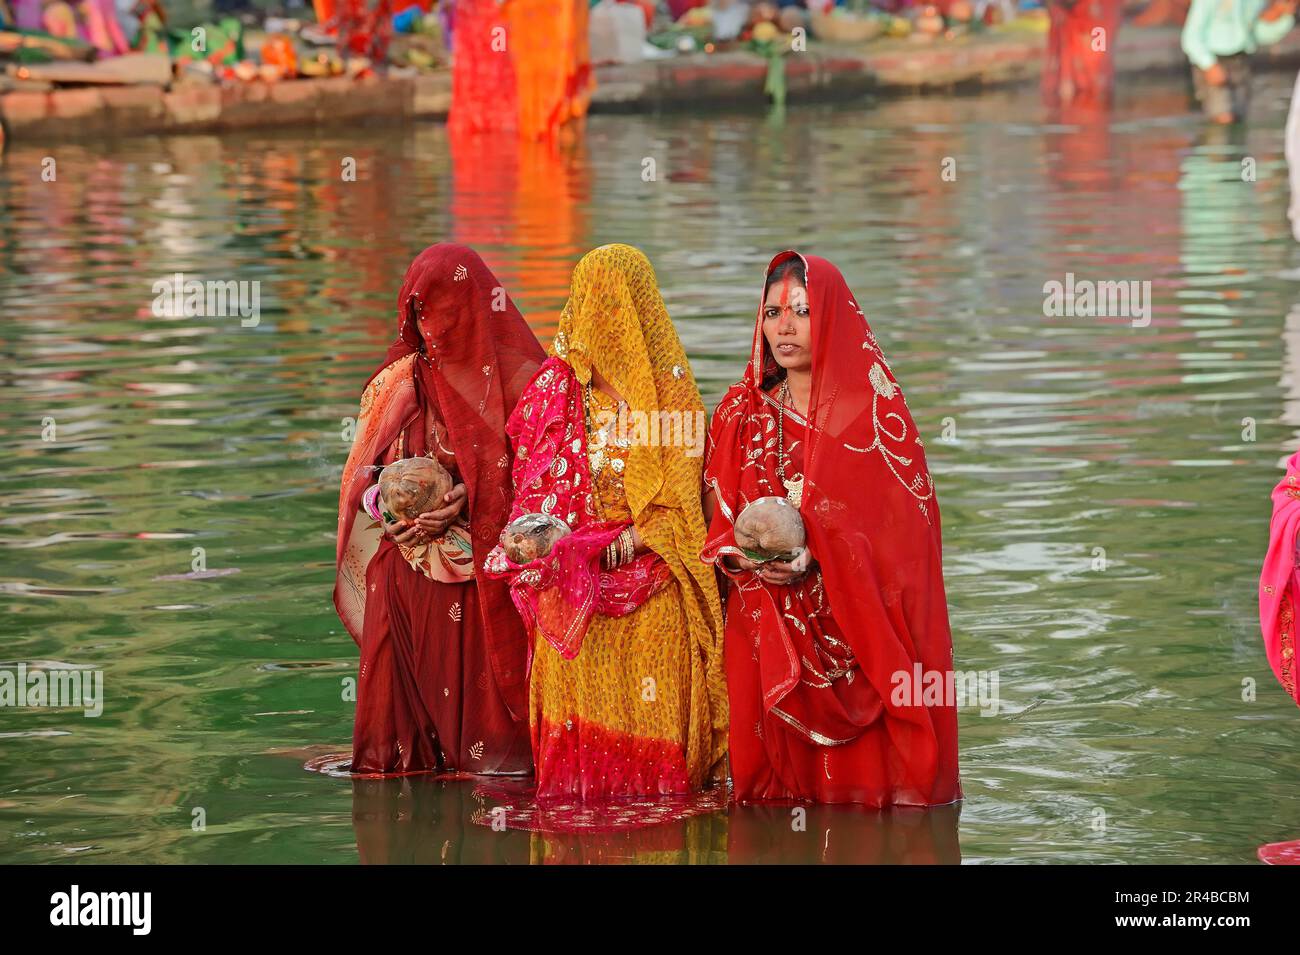 Les femmes hindoues au Hindou Chhath Festival, New Delhi, New Dehli, New Delhi, Chhath Festival, Festival hindou, femmes indiennes, femme indienne, Inde Banque D'Images